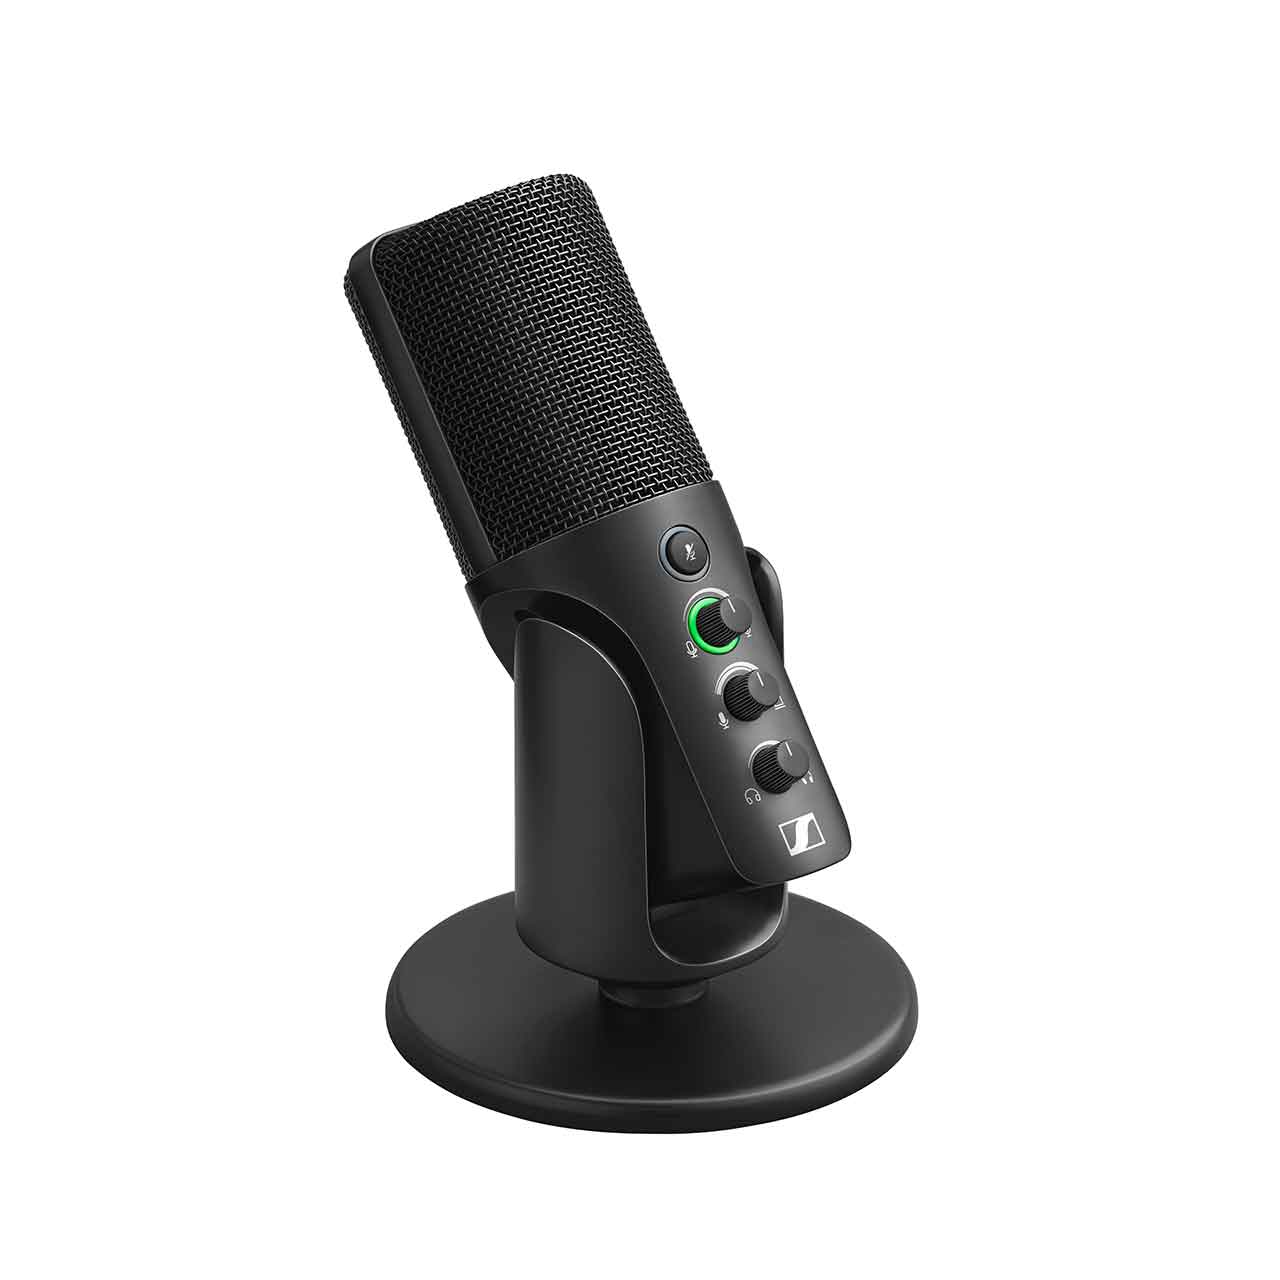 Micro Sennheiser Profile USB hàng chính hãng chuyên dùng thu âm, Podcast, gaming.